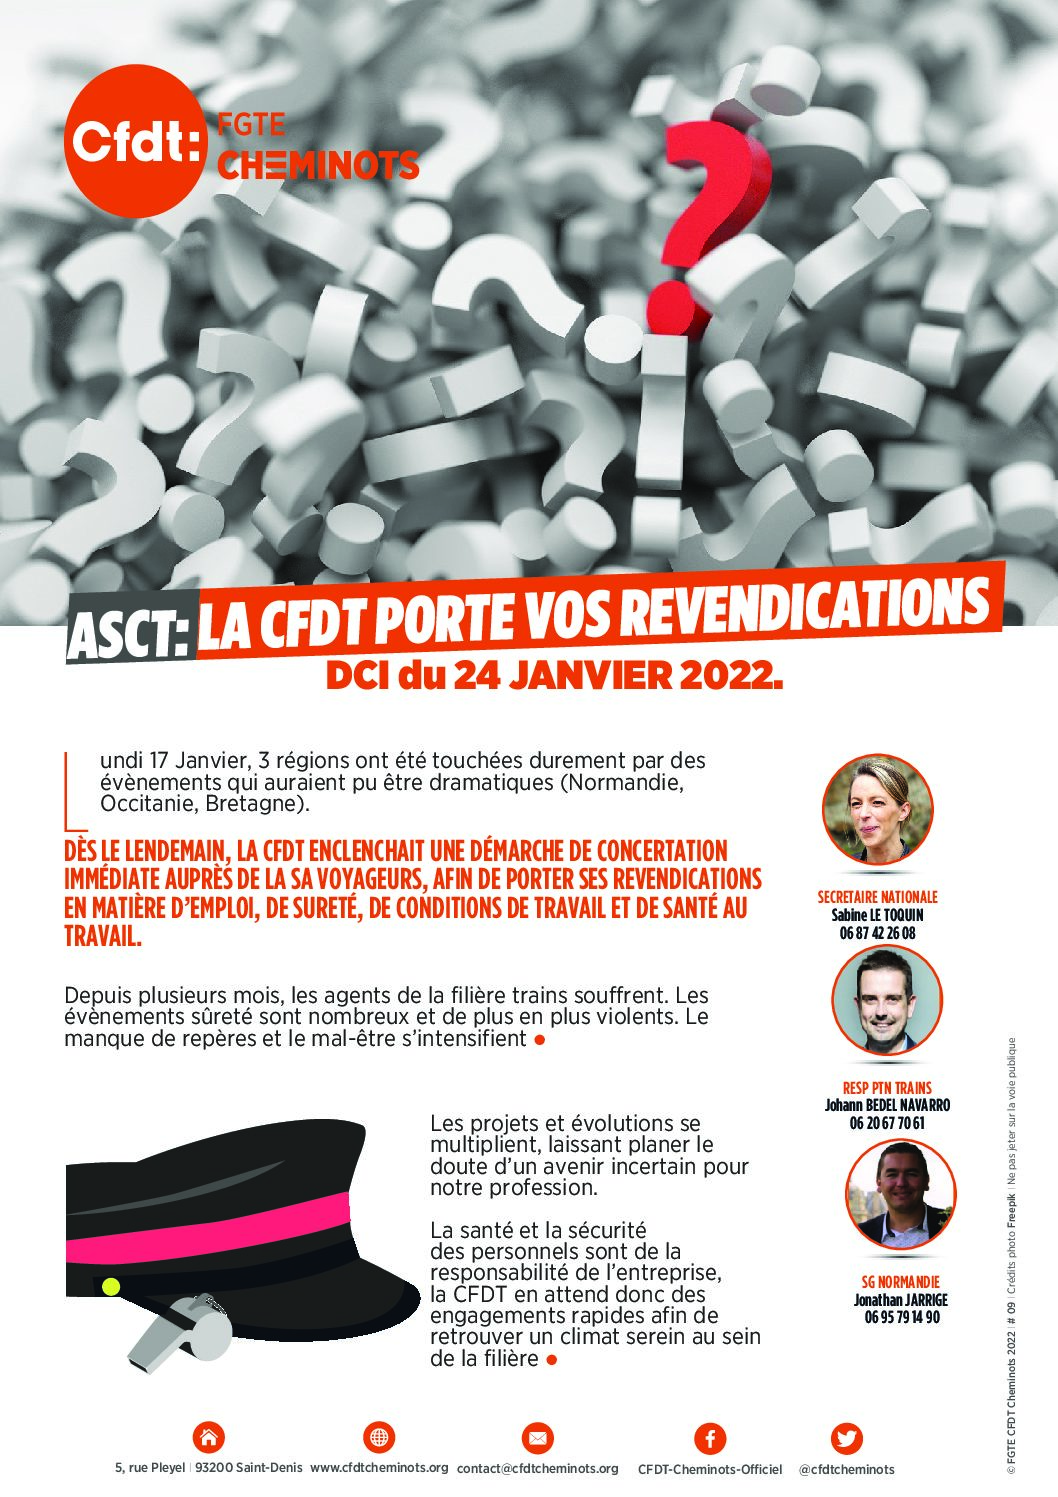 ASCT: LA CFDT PORTE VOS REVENDICATIONS